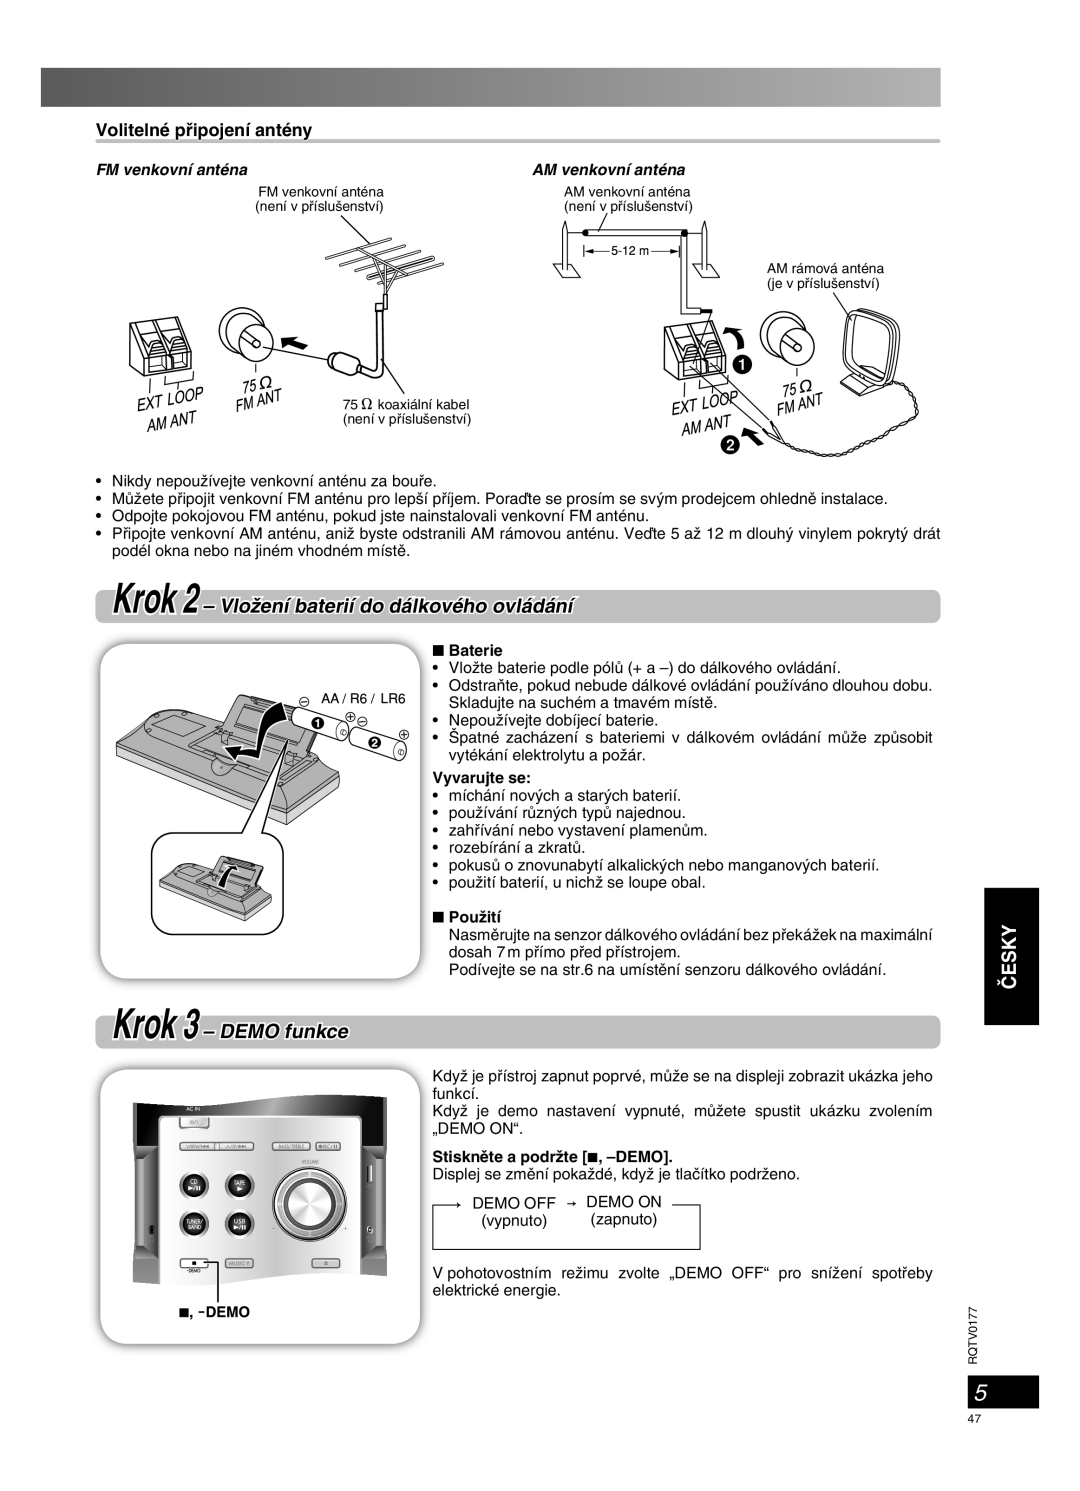 Panasonic SC-PM45 Krok 2 – VloÏení baterií do dálkového ovládání, Krok 3 – DEMO funkce, âESKY, Volitelné pﬁipojení antény 